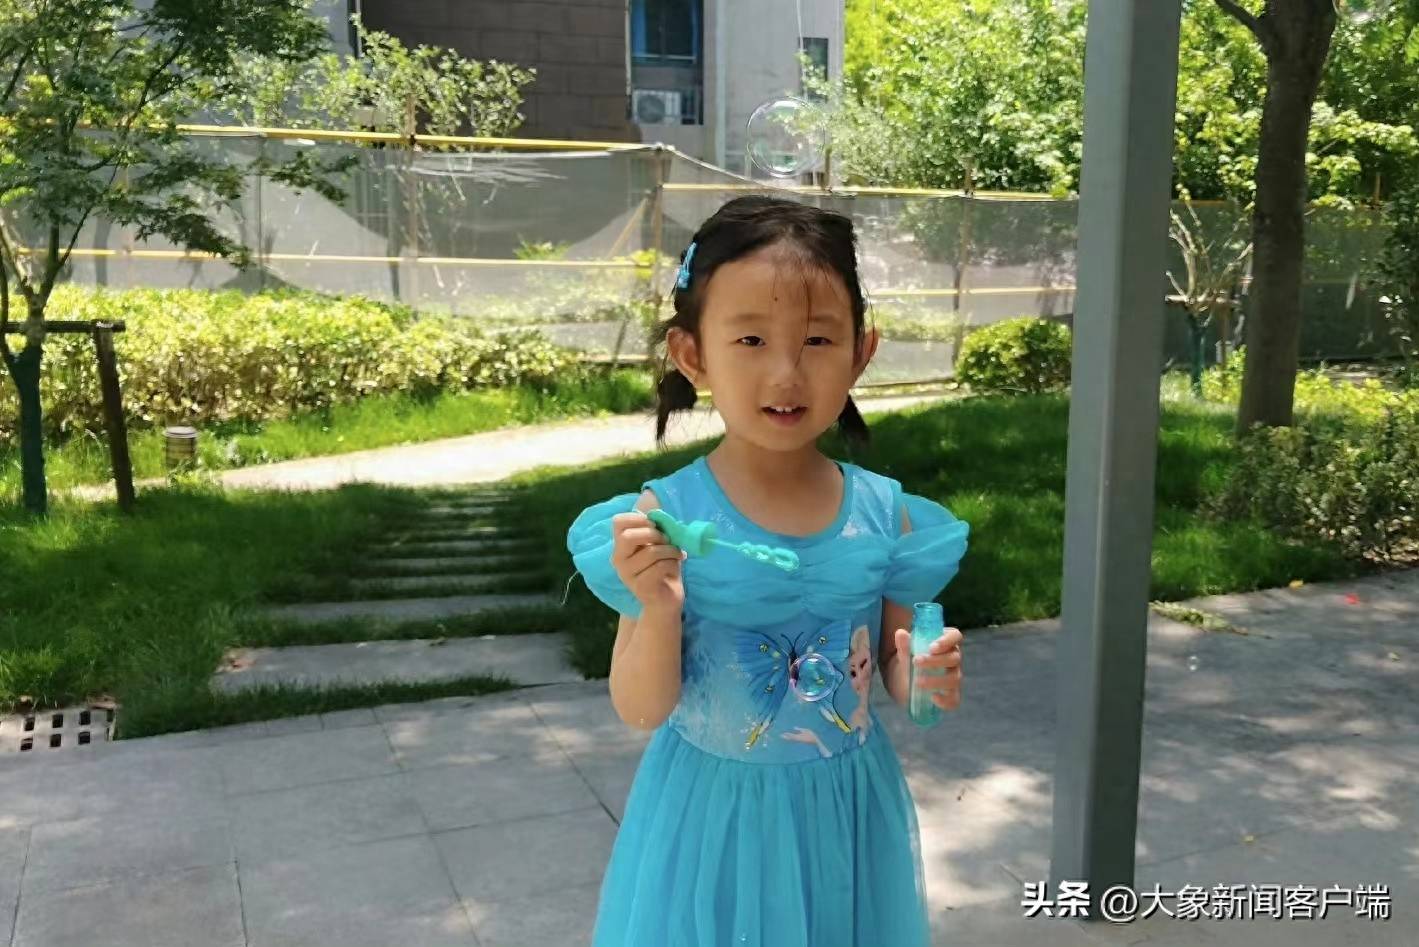 上海海滩失踪女童遗体在宁波被发现，又一起悲剧，一声叹息-阿臻杂谈-阿臻杂谈-哔哩哔哩视频